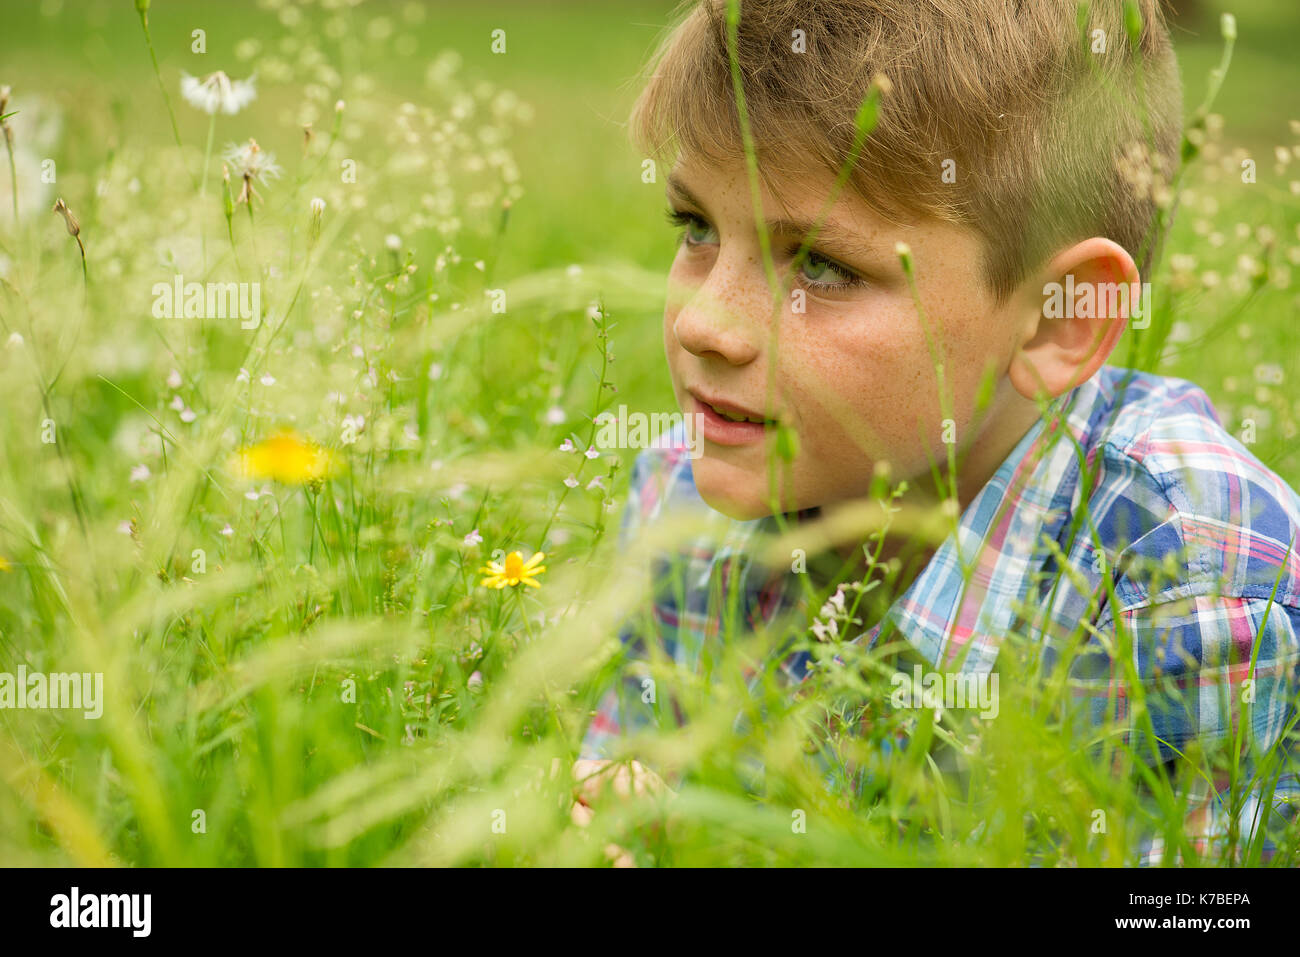 Boy in field of wildflowers Stock Photo